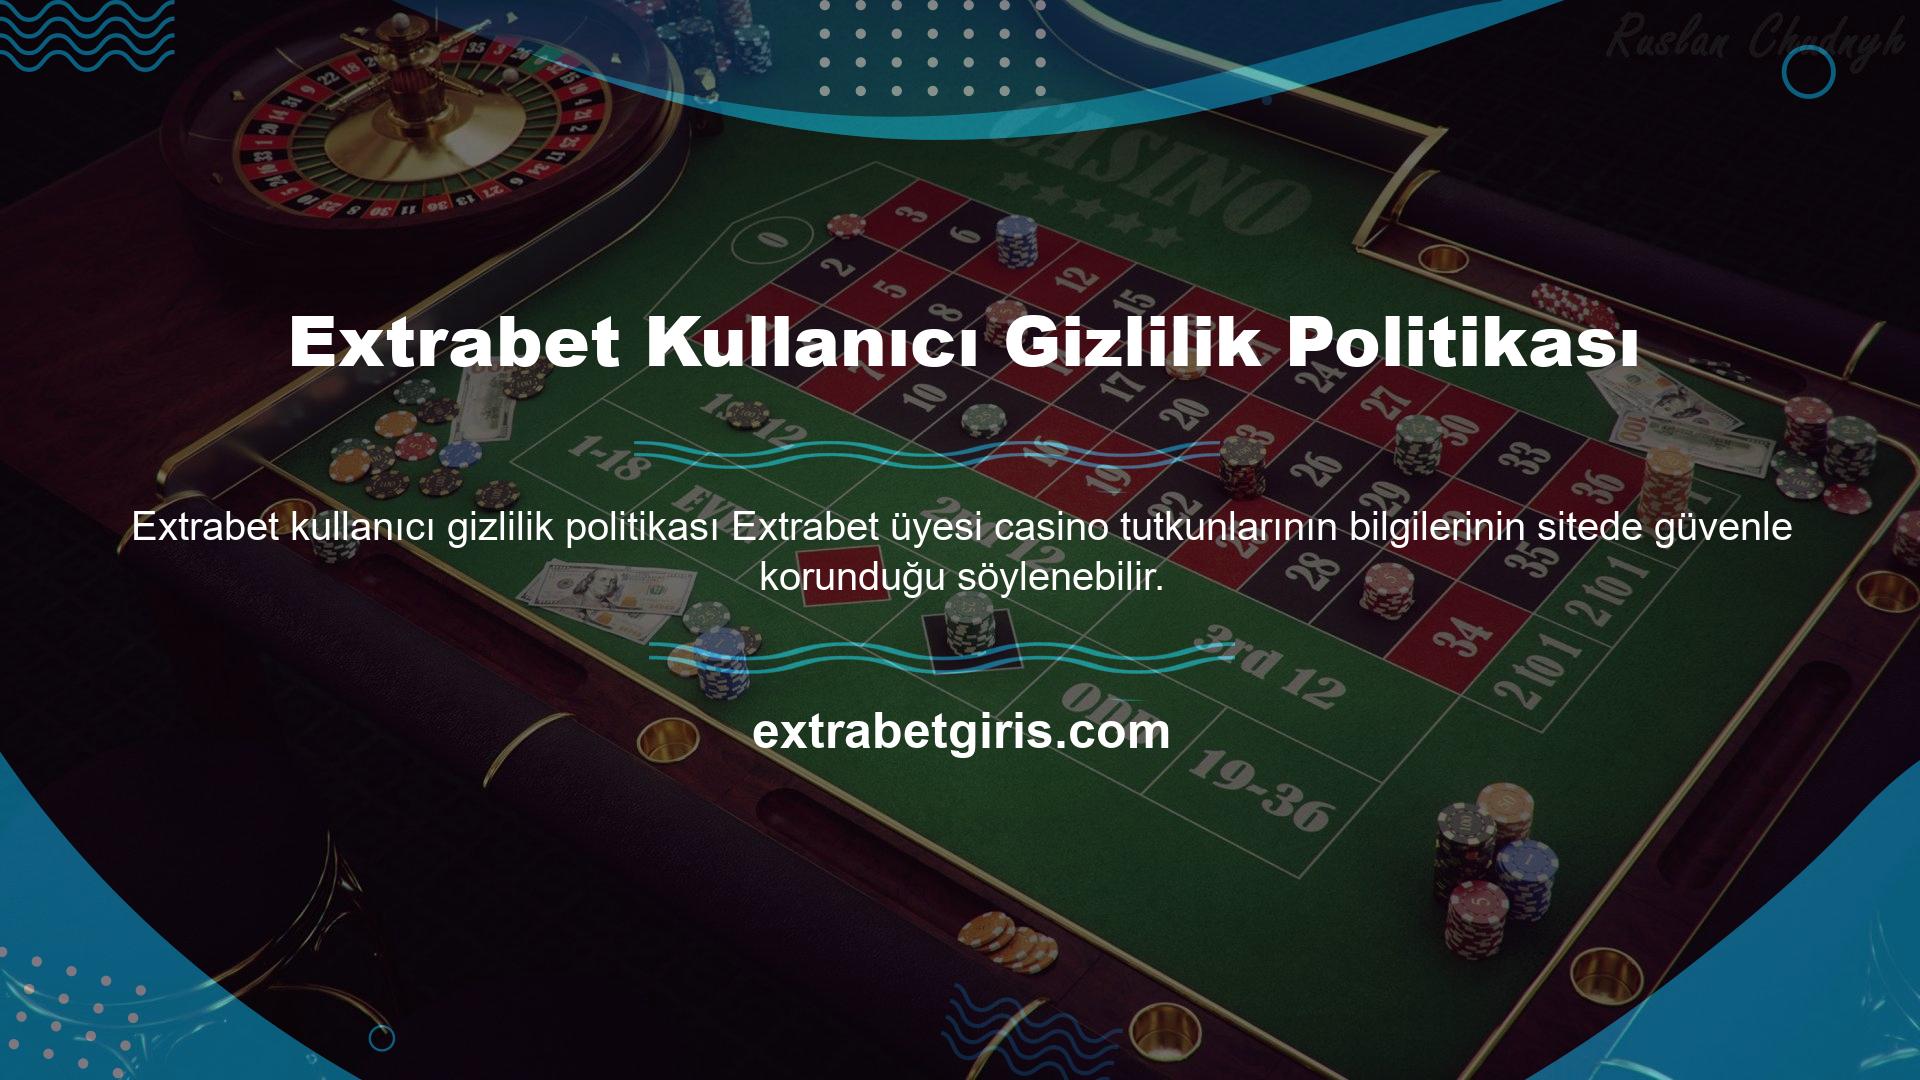 Casino Extrabet her üyesi, kullanıcı bilgilerini web sitesinde saklar, böylece üçüncü şahıs bilgilerine erişilemez